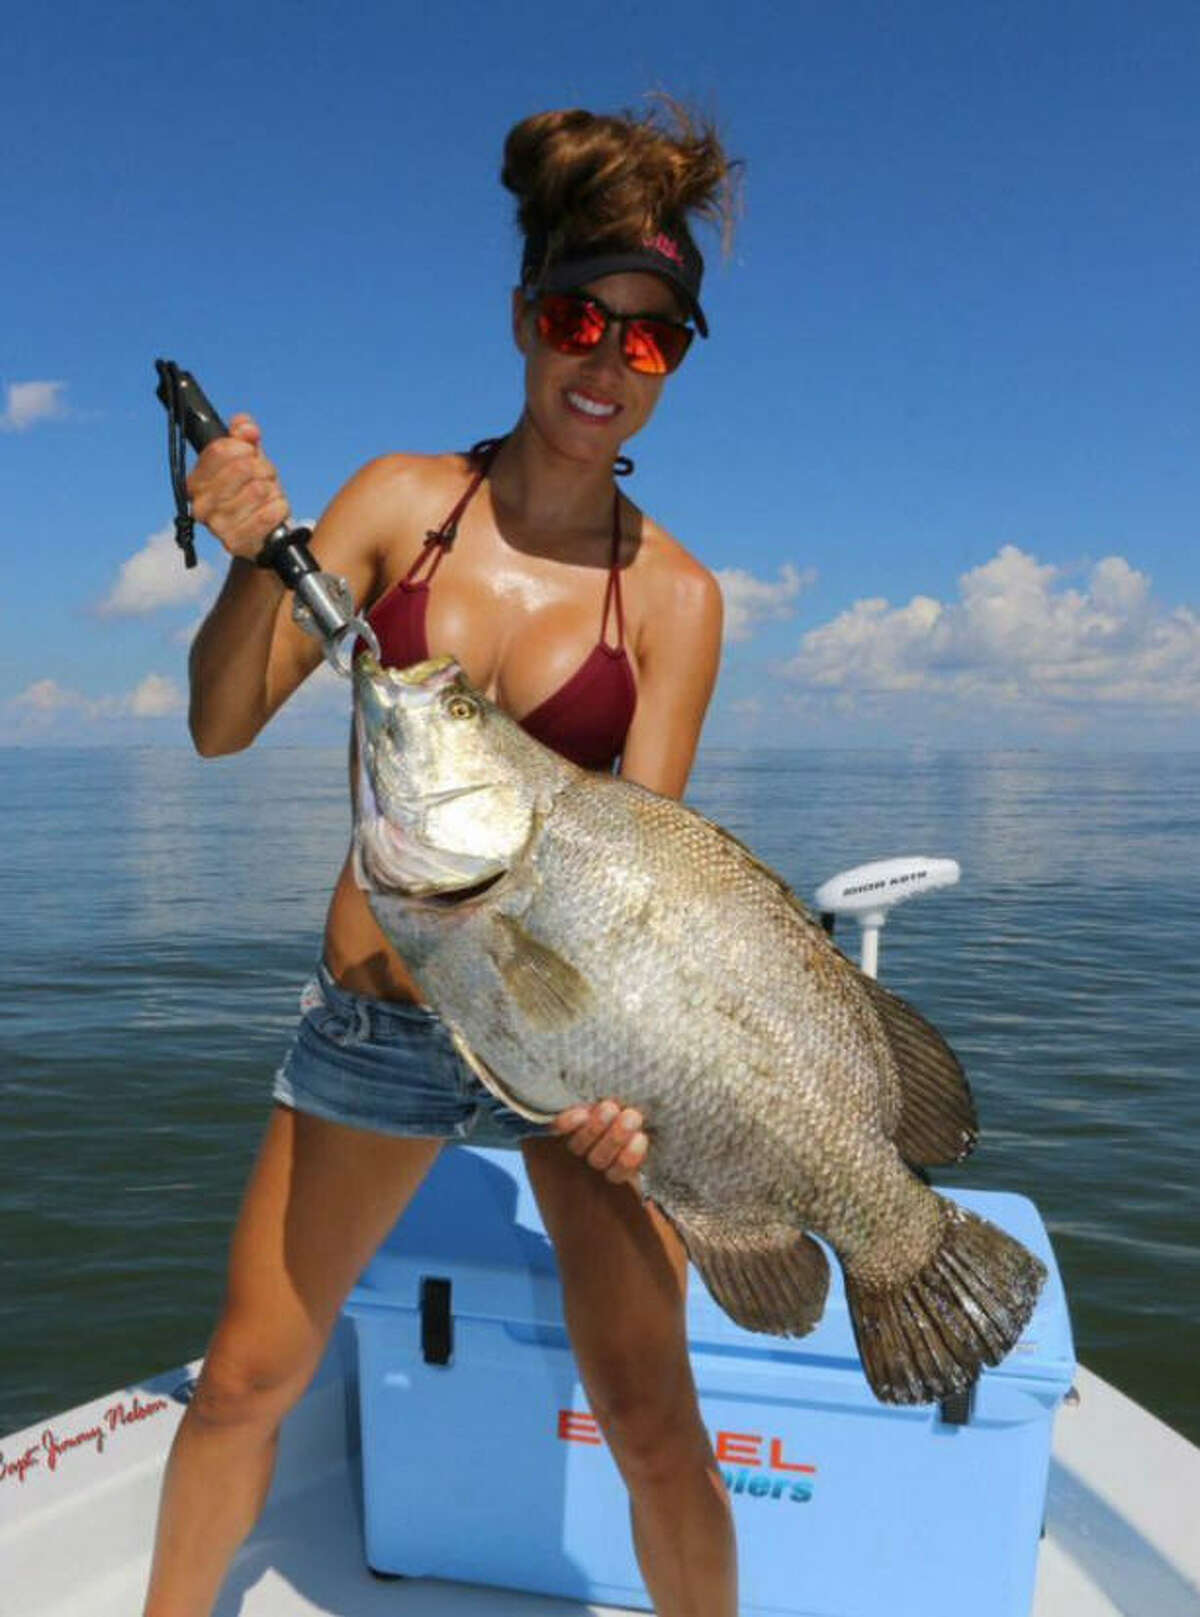 South Texas Fishing - South Texas Fishing Association